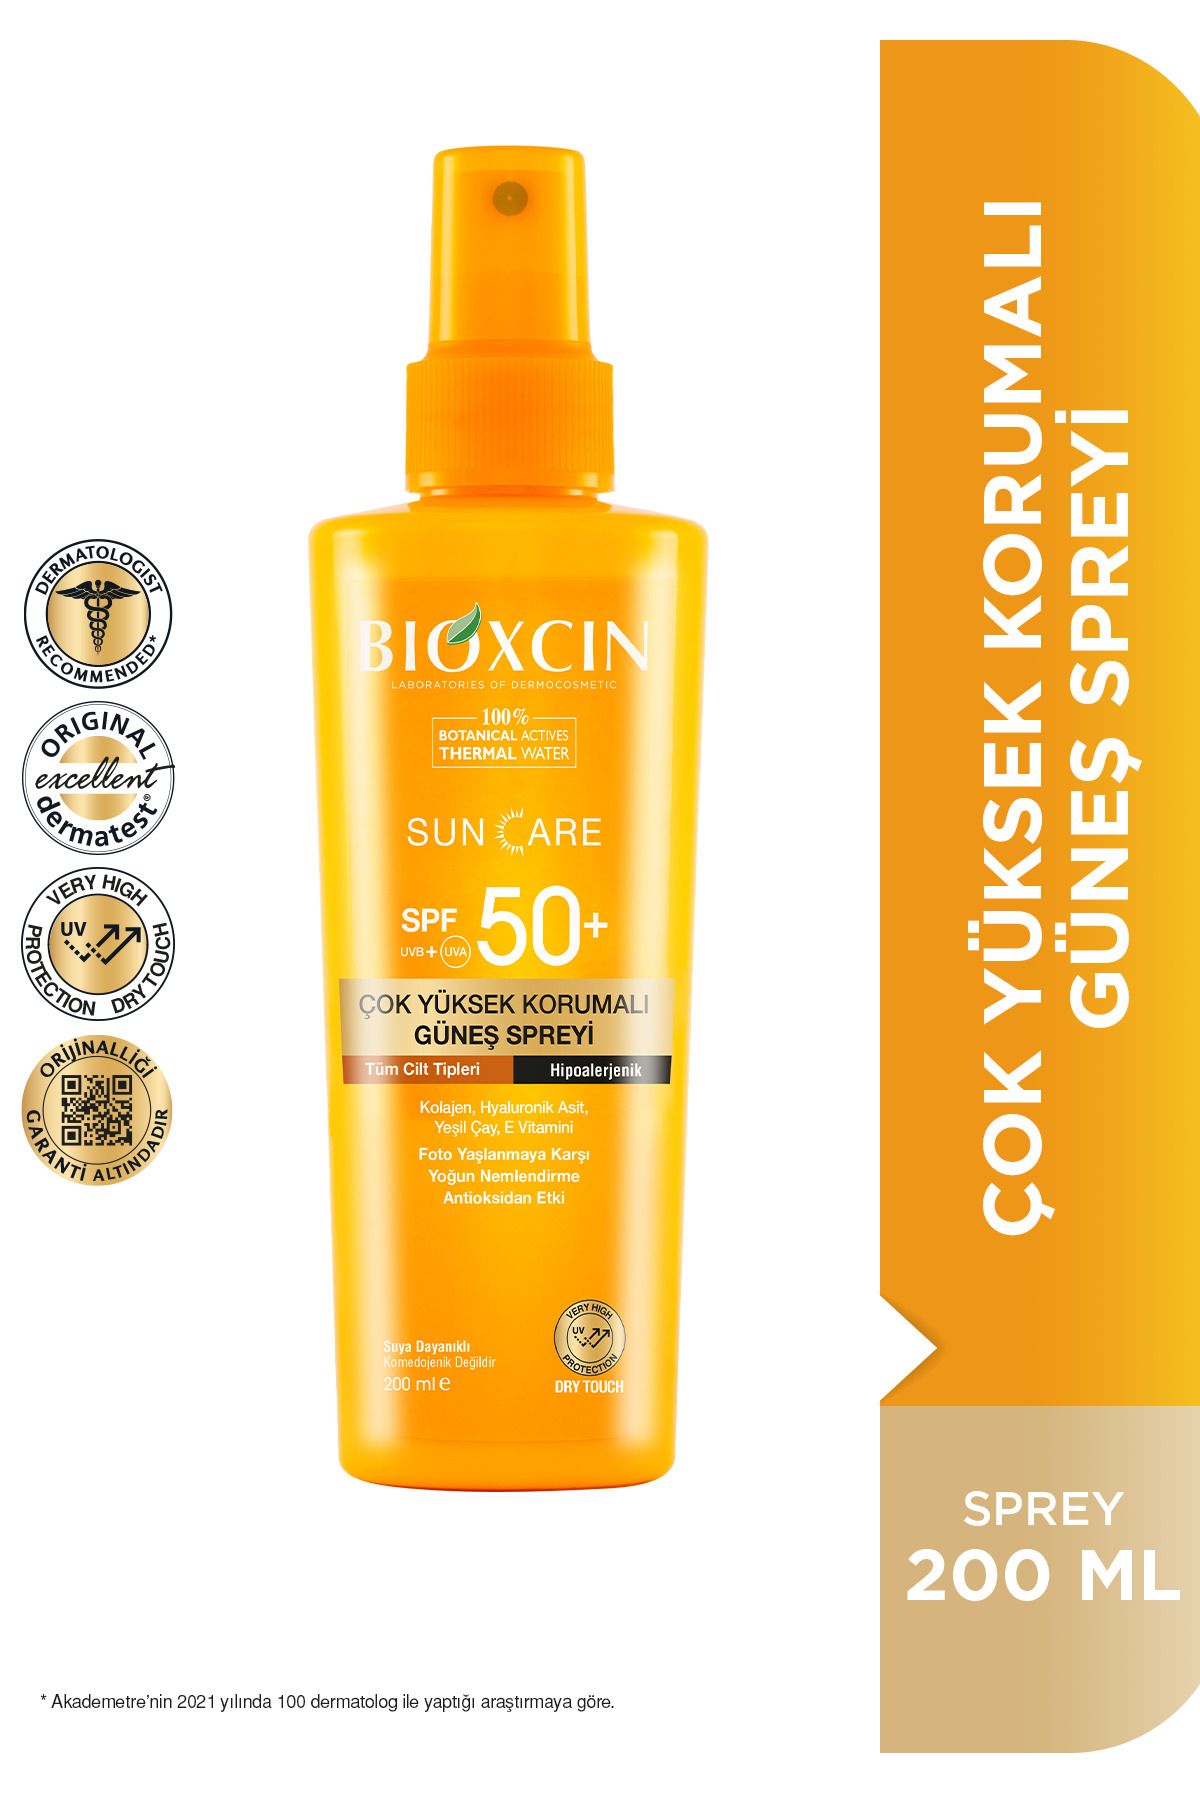 Bioxcin Sun Care Spf 50 Çok Yüksek Korumalı Vücut Güneş Spreyi 200 ml - Kolajen Çok Yüksek Koruma